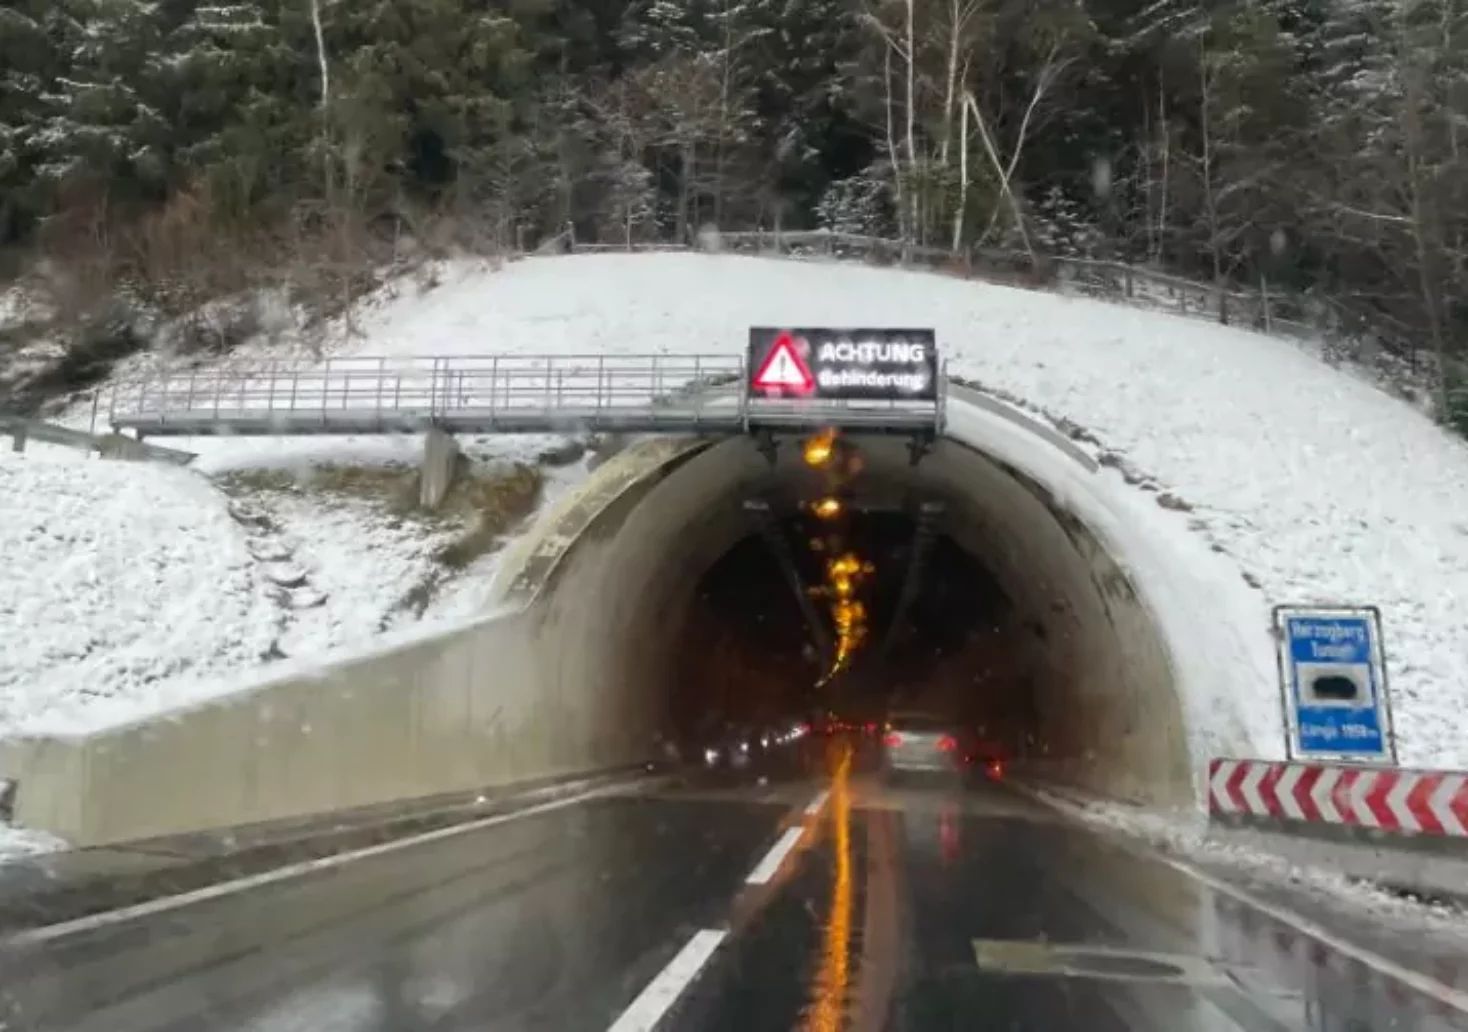 Foto in Beitrag von 5min.at: Zu sehen ist ein Tunnel auf der A2 im Winter.